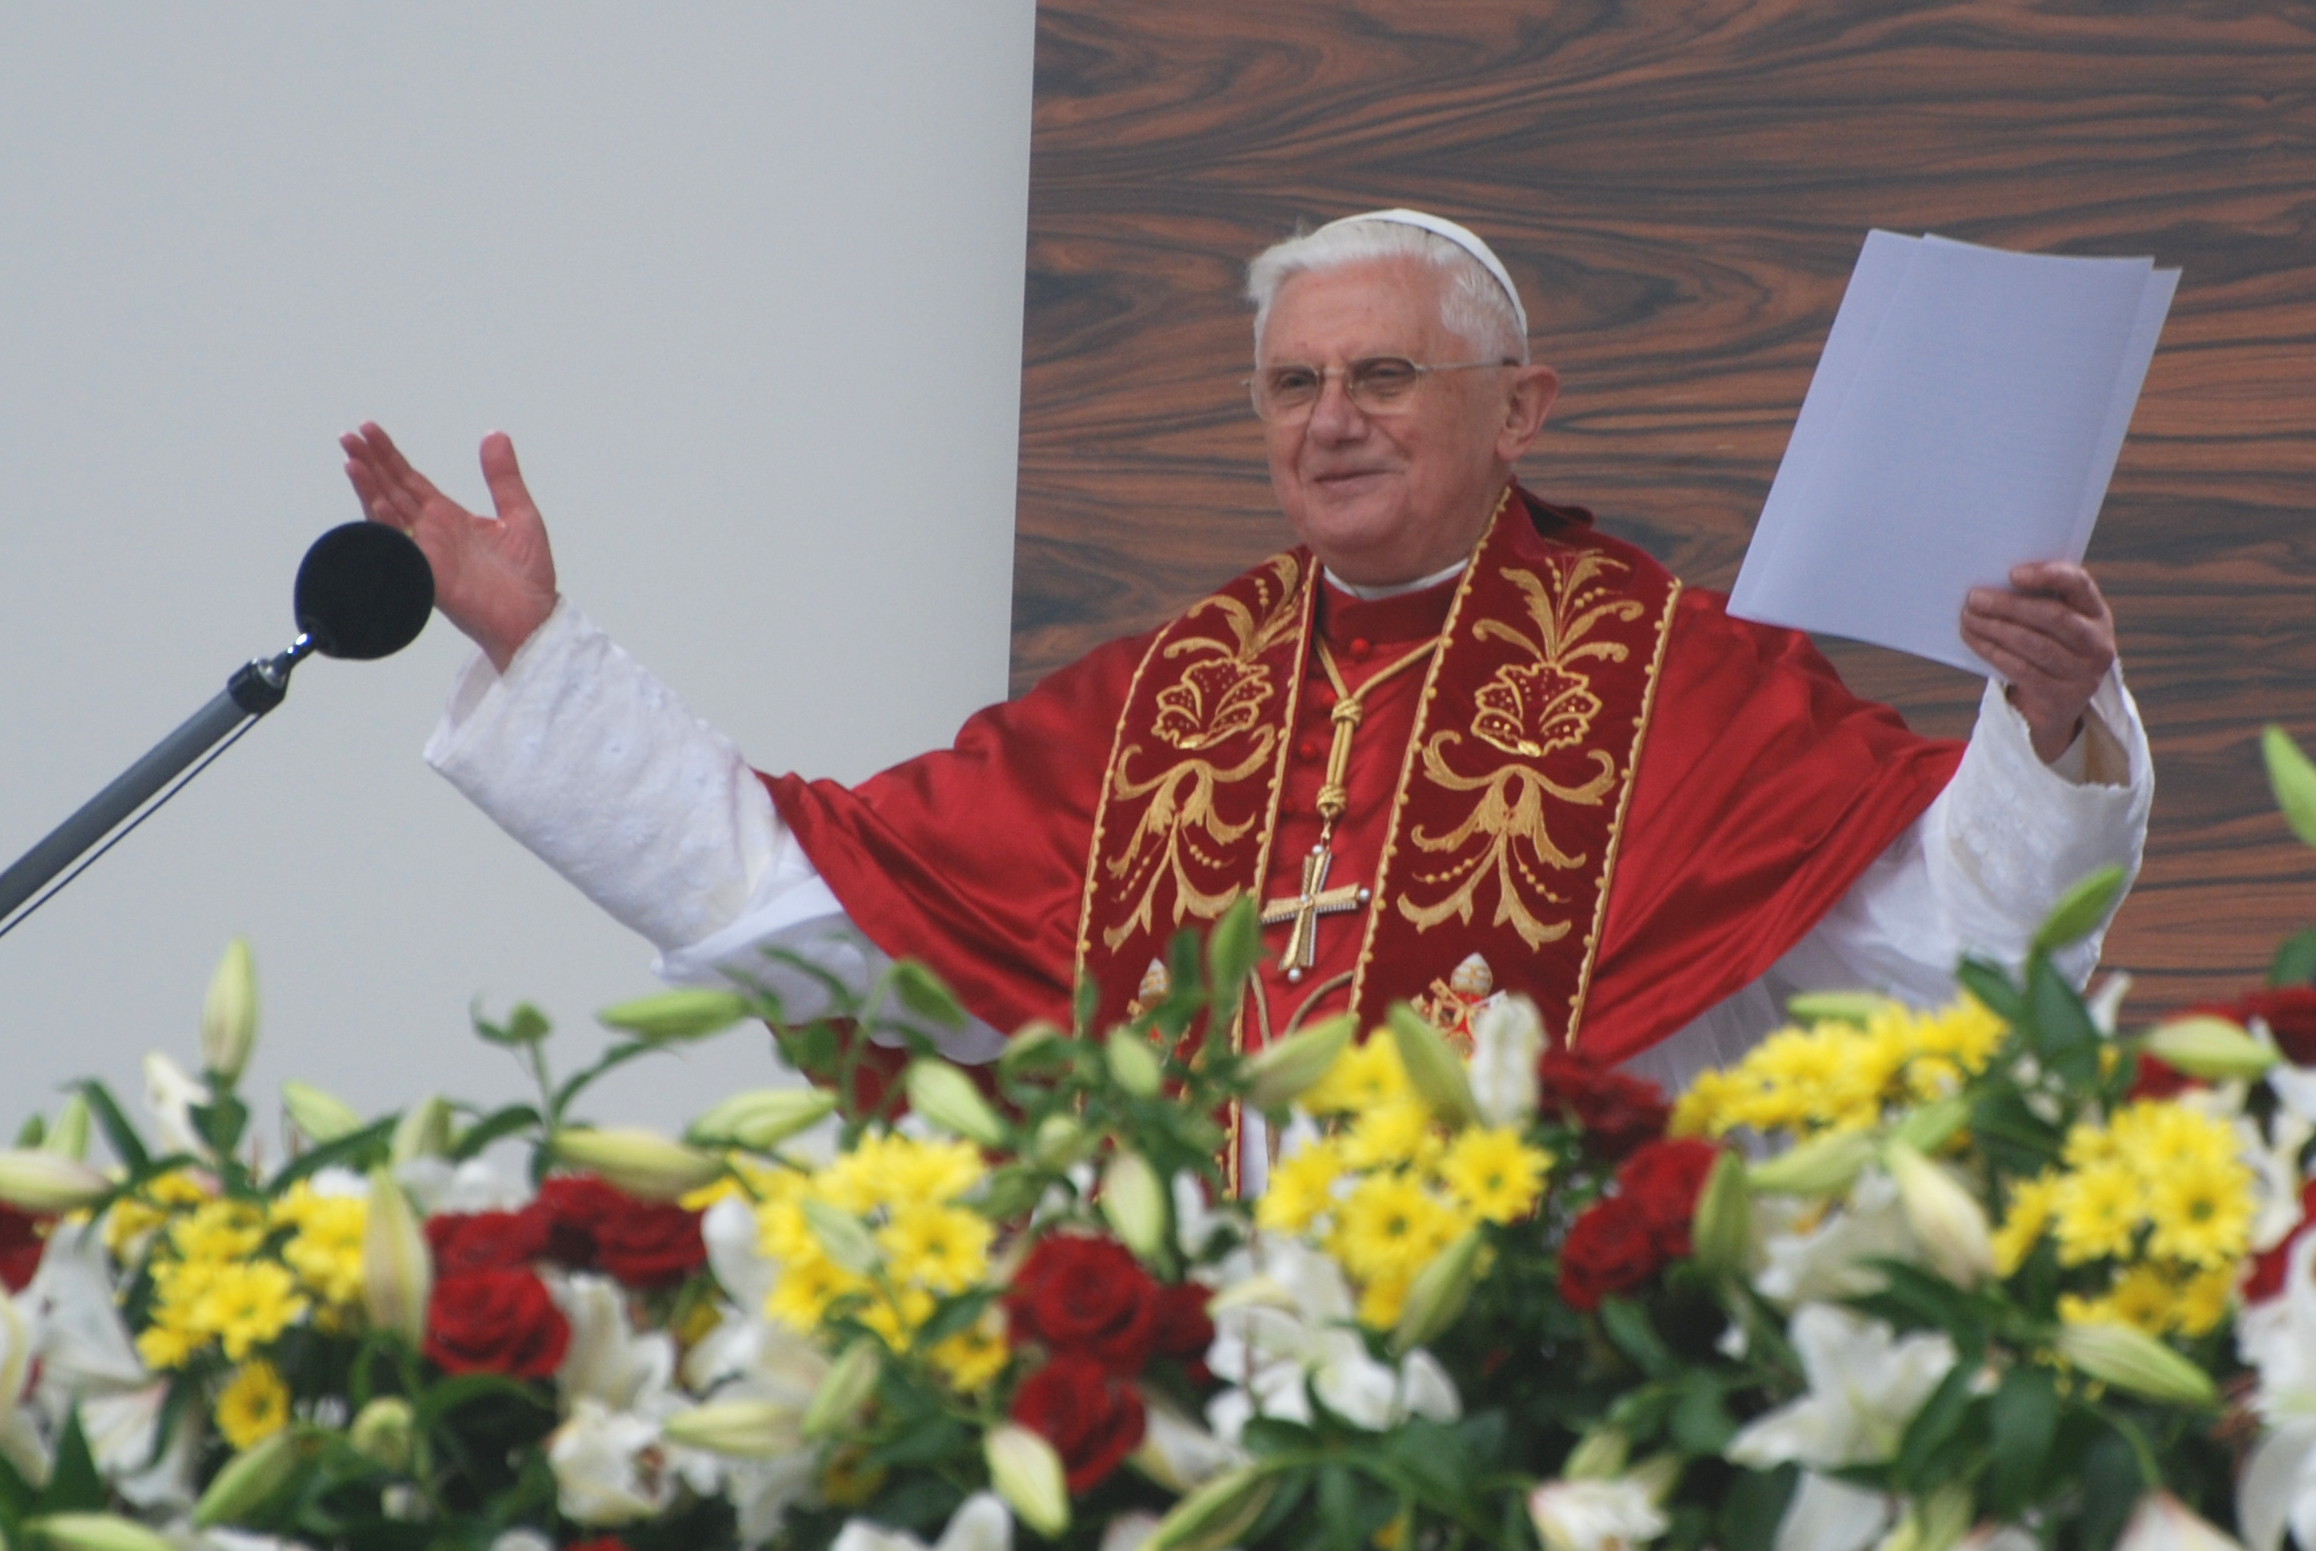 Anno dazumal: Papst Benedikt vor der Kameralinse